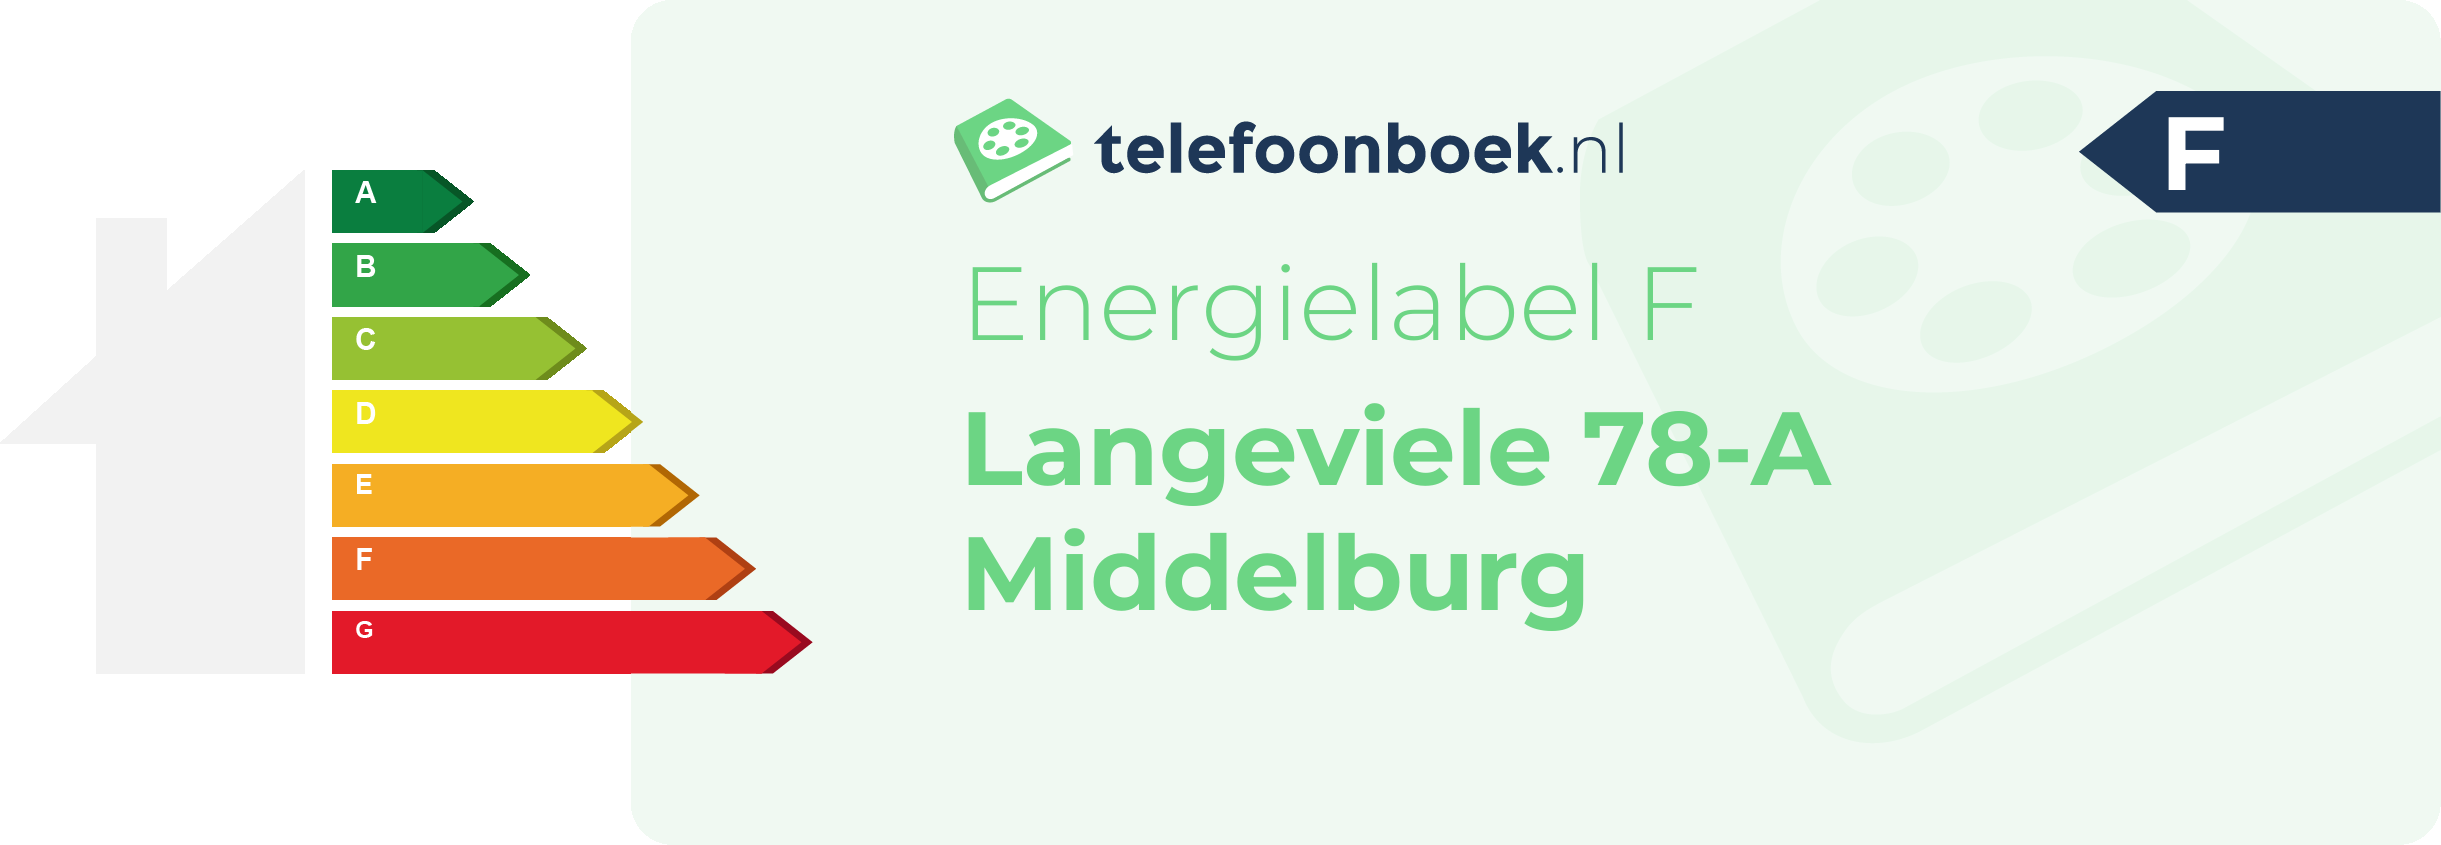 Energielabel Langeviele 78-A Middelburg